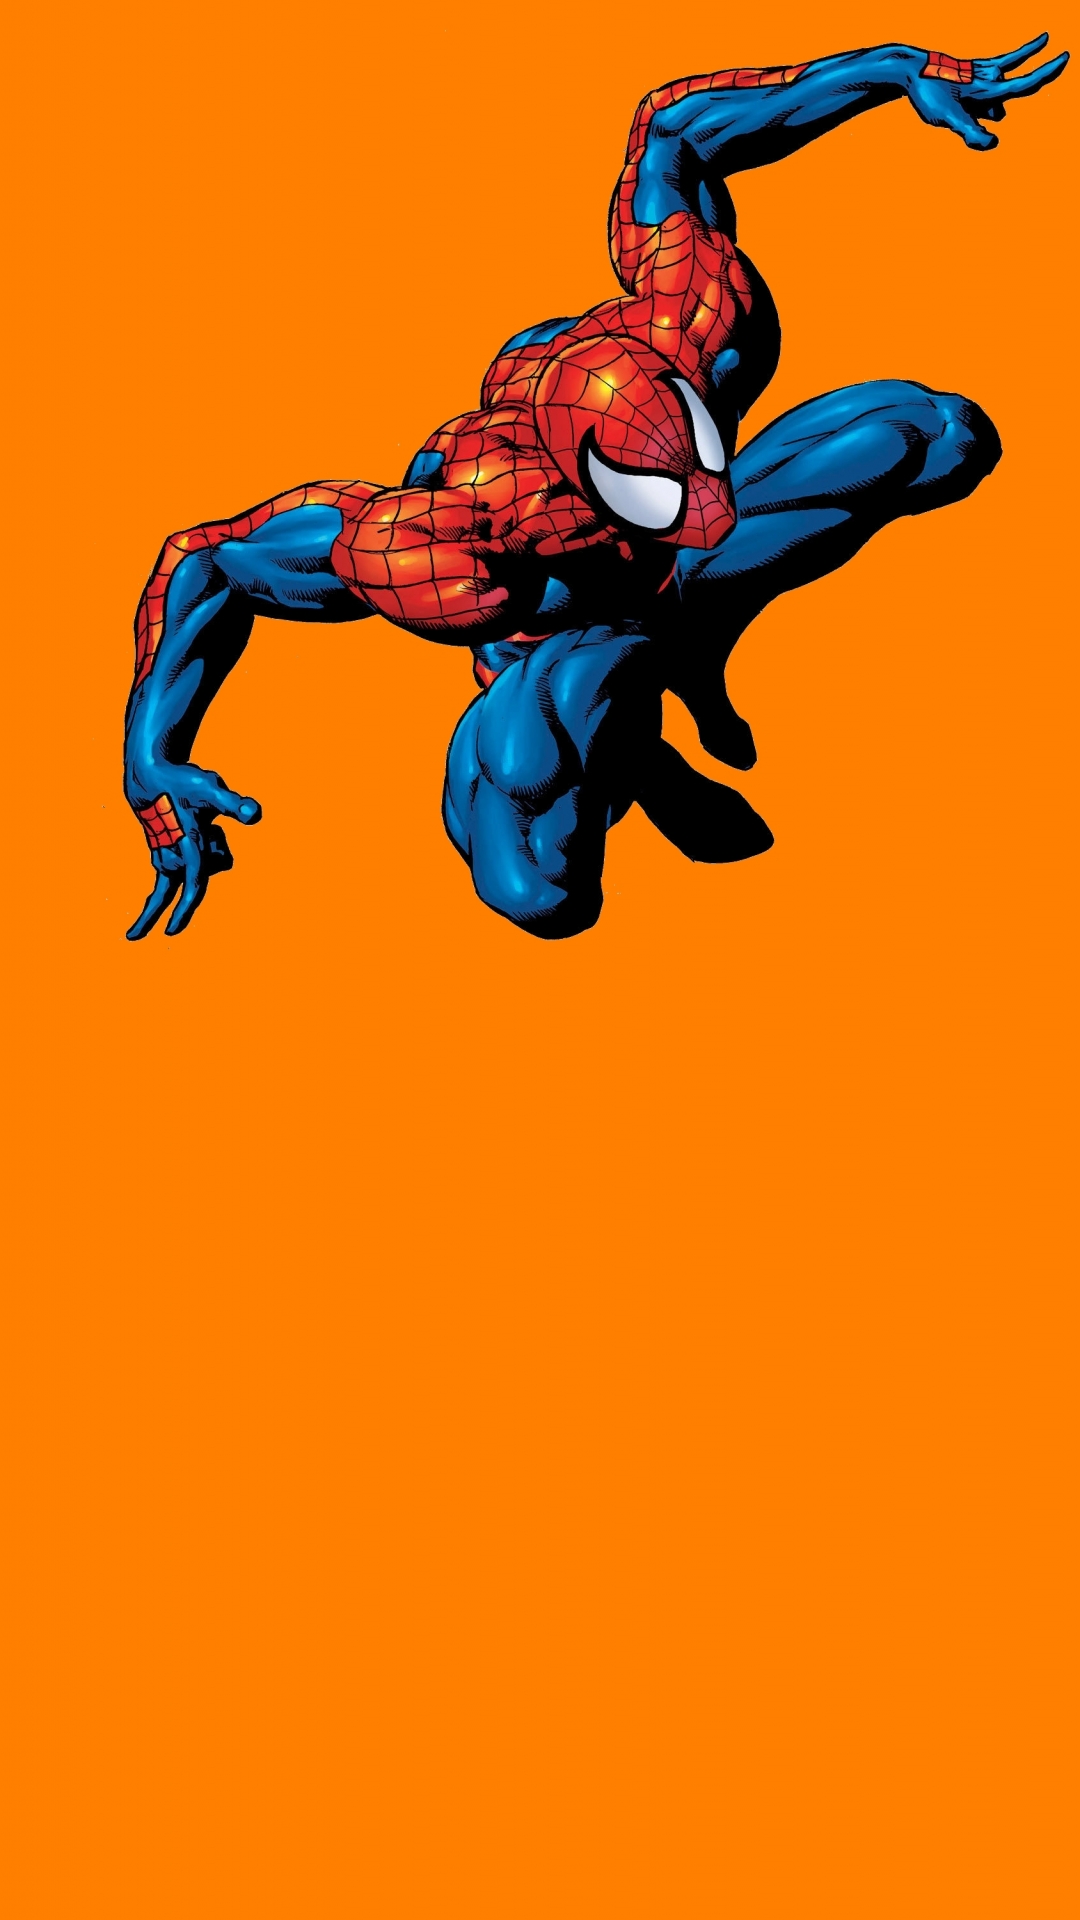 fond d'écran spiderman hd,personnage fictif,super héros,homme araignée,héros,fiction